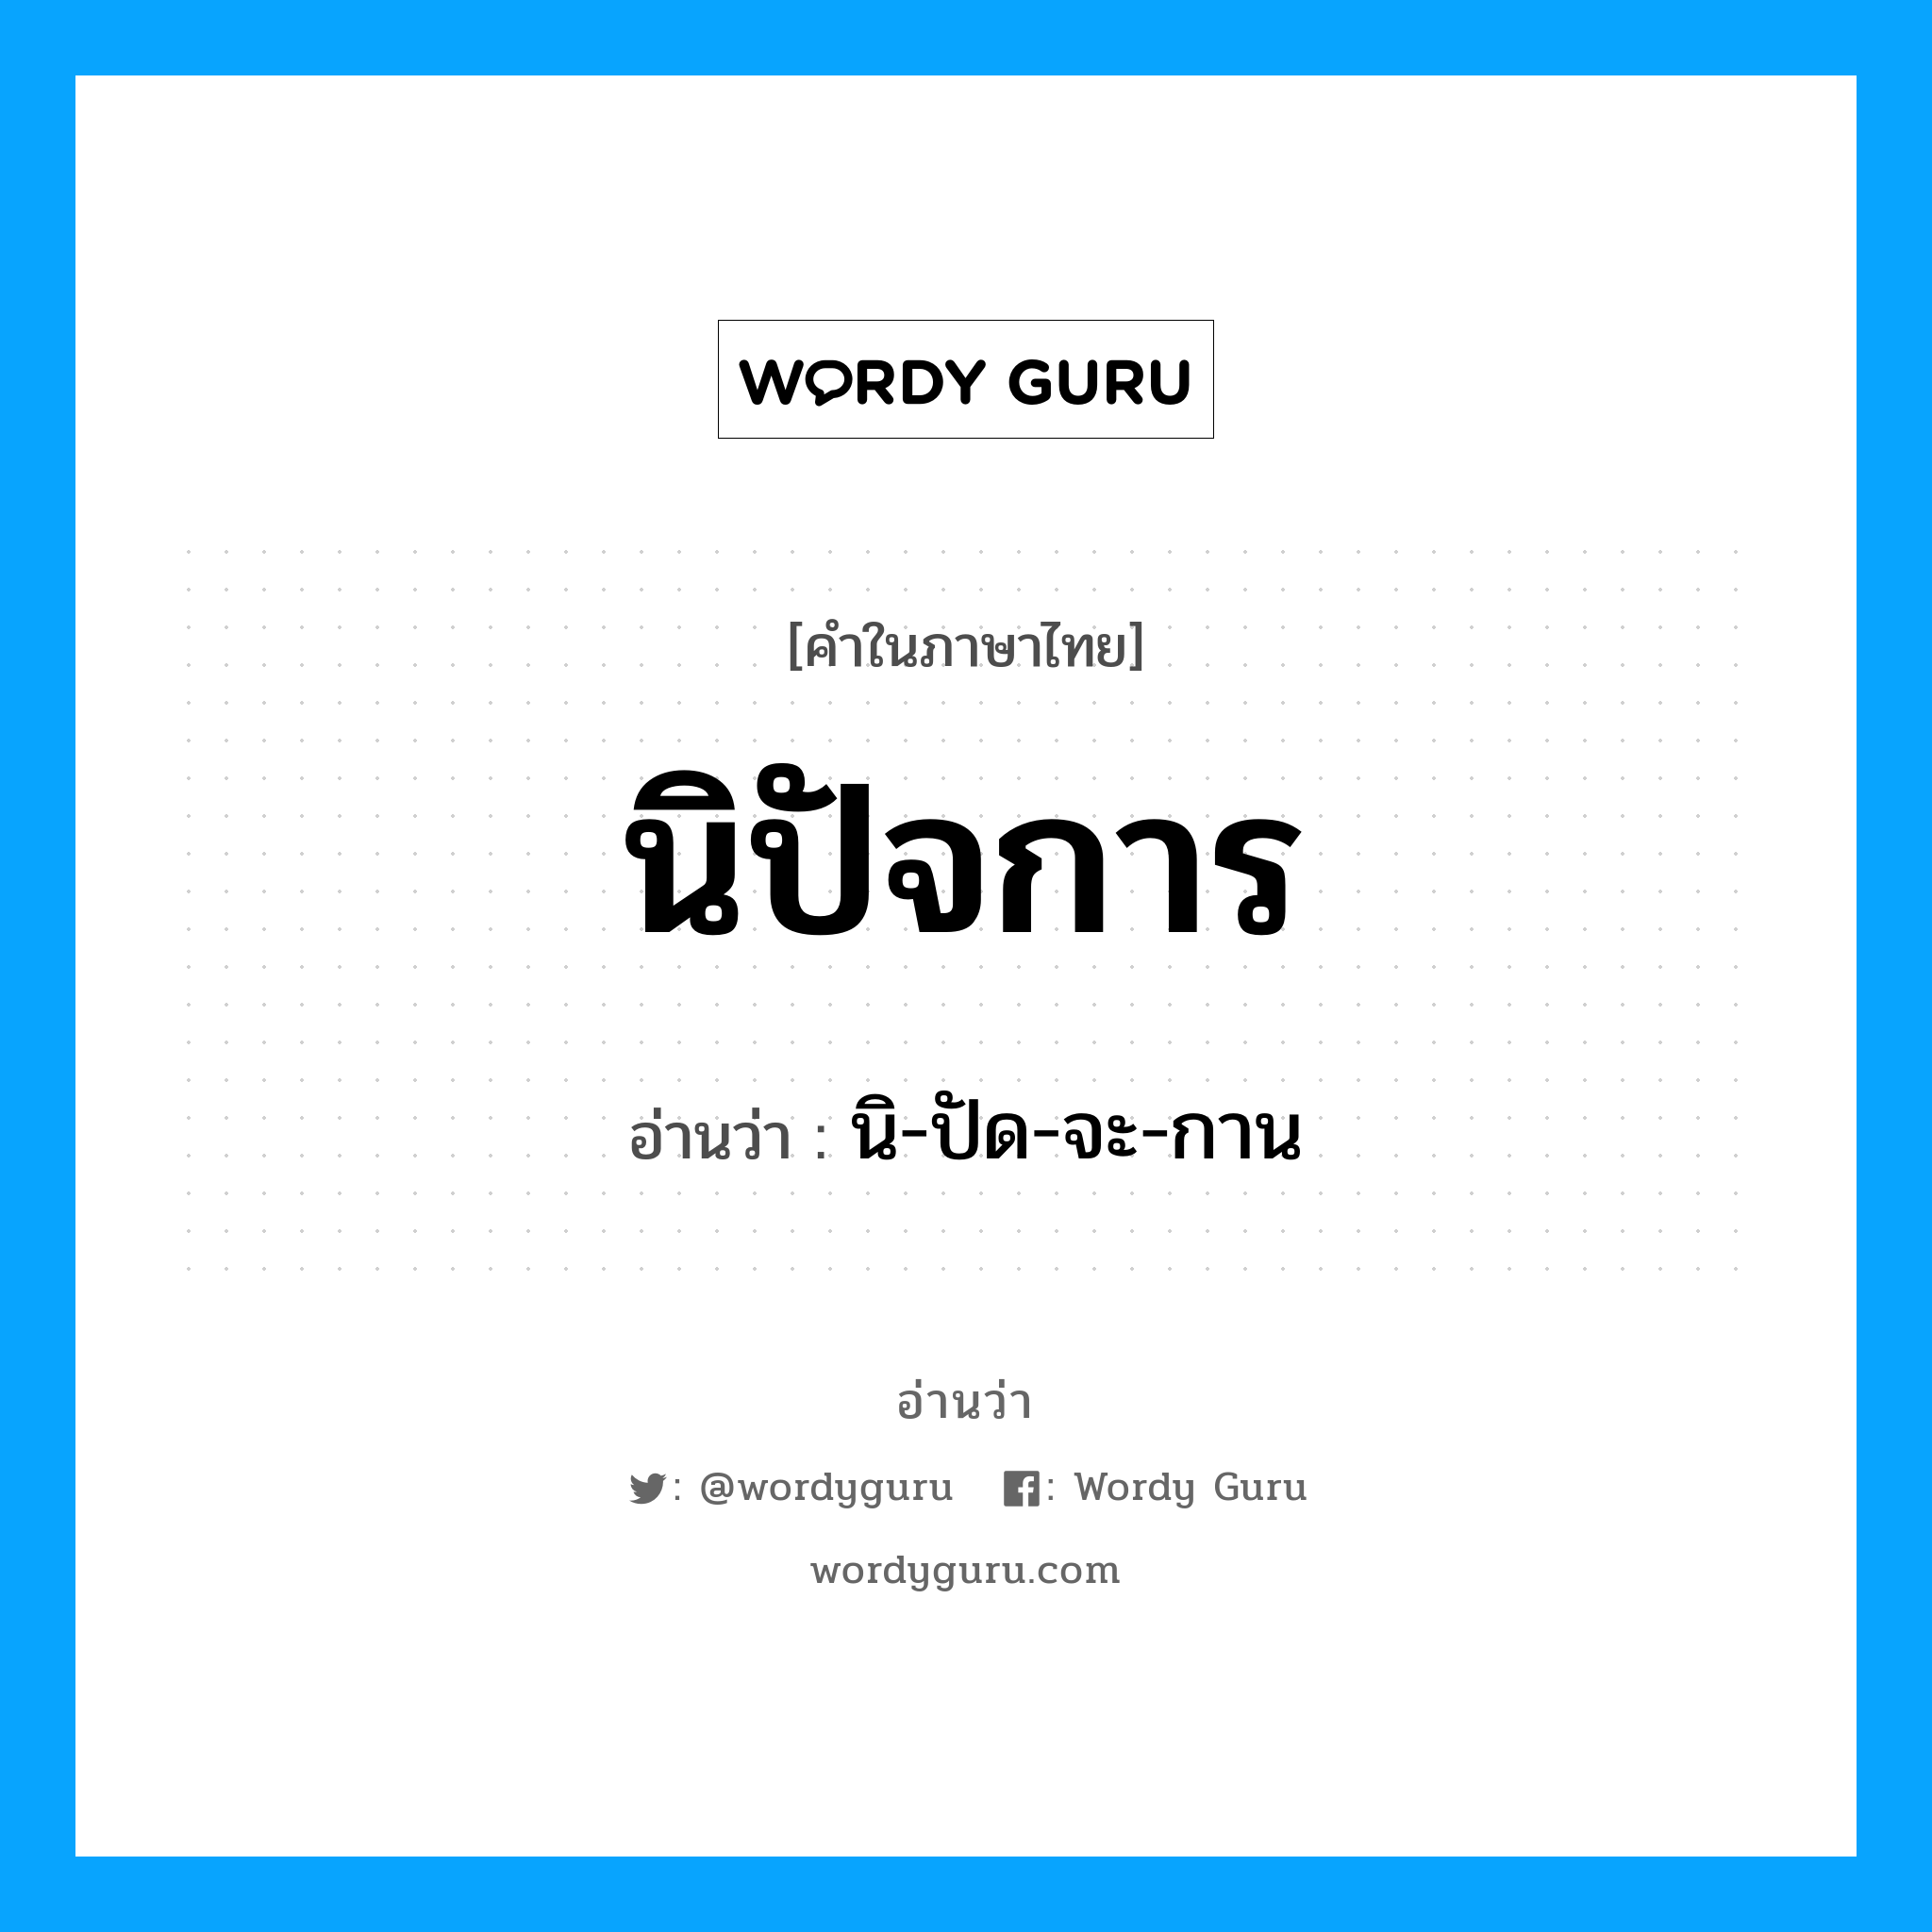 นิ-ปัด-จะ-กาน เป็นคำอ่านของคำไหน?, คำในภาษาไทย นิ-ปัด-จะ-กาน อ่านว่า นิปัจการ